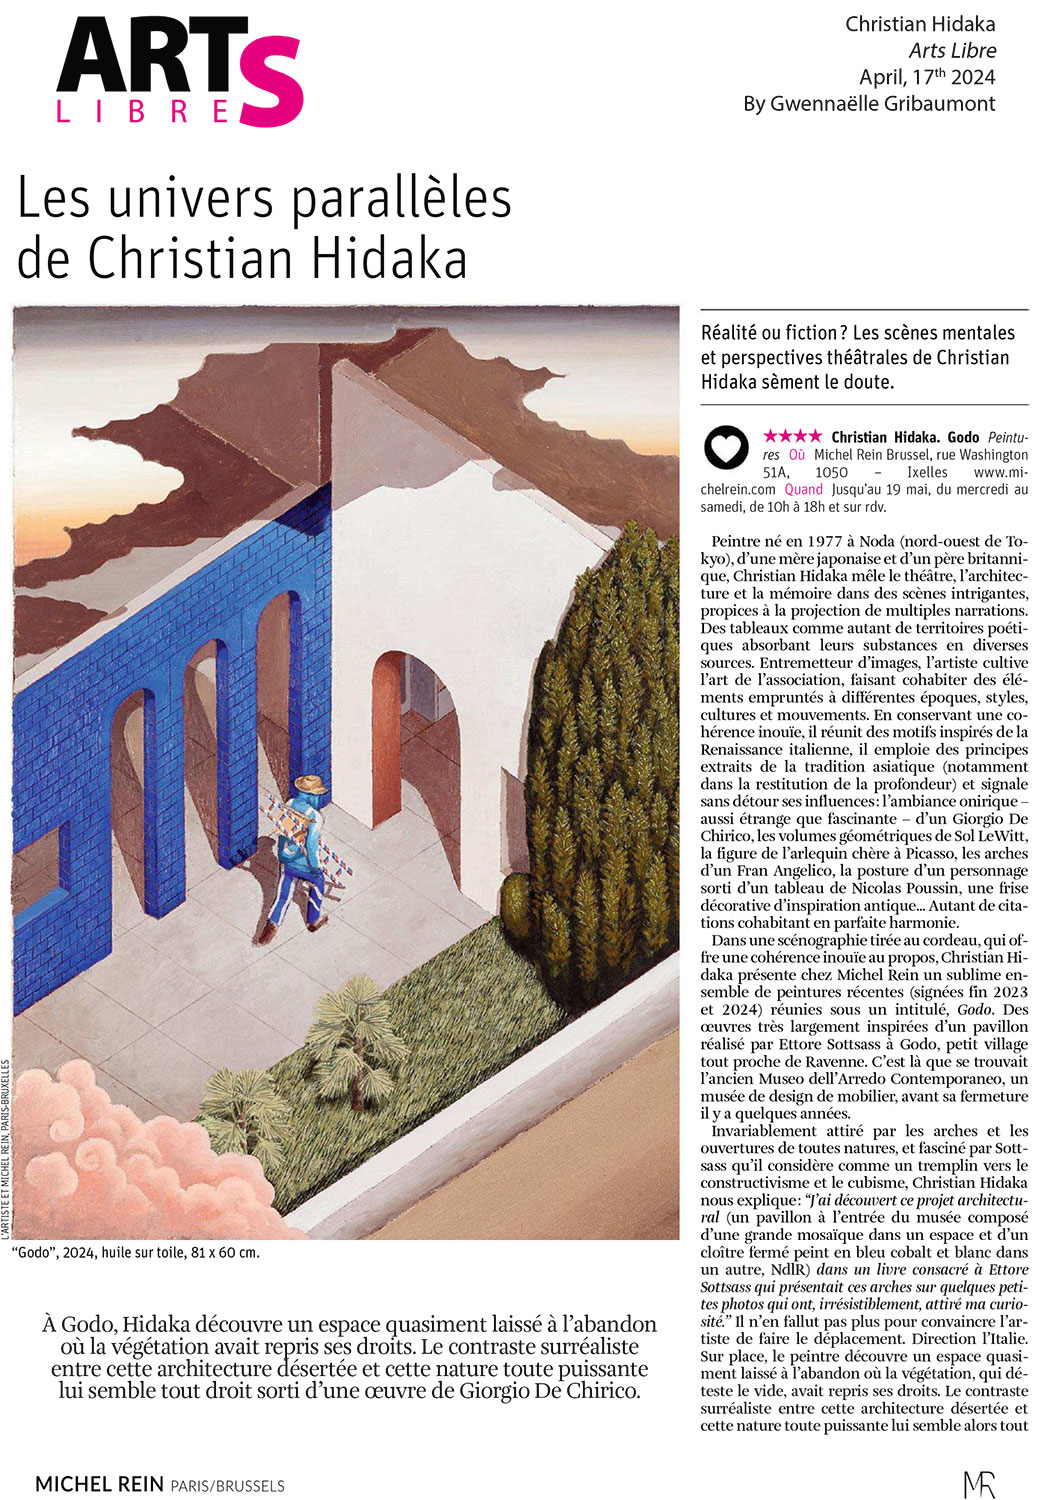 Les univers parallles de Christian Hidaka - Arts Libre